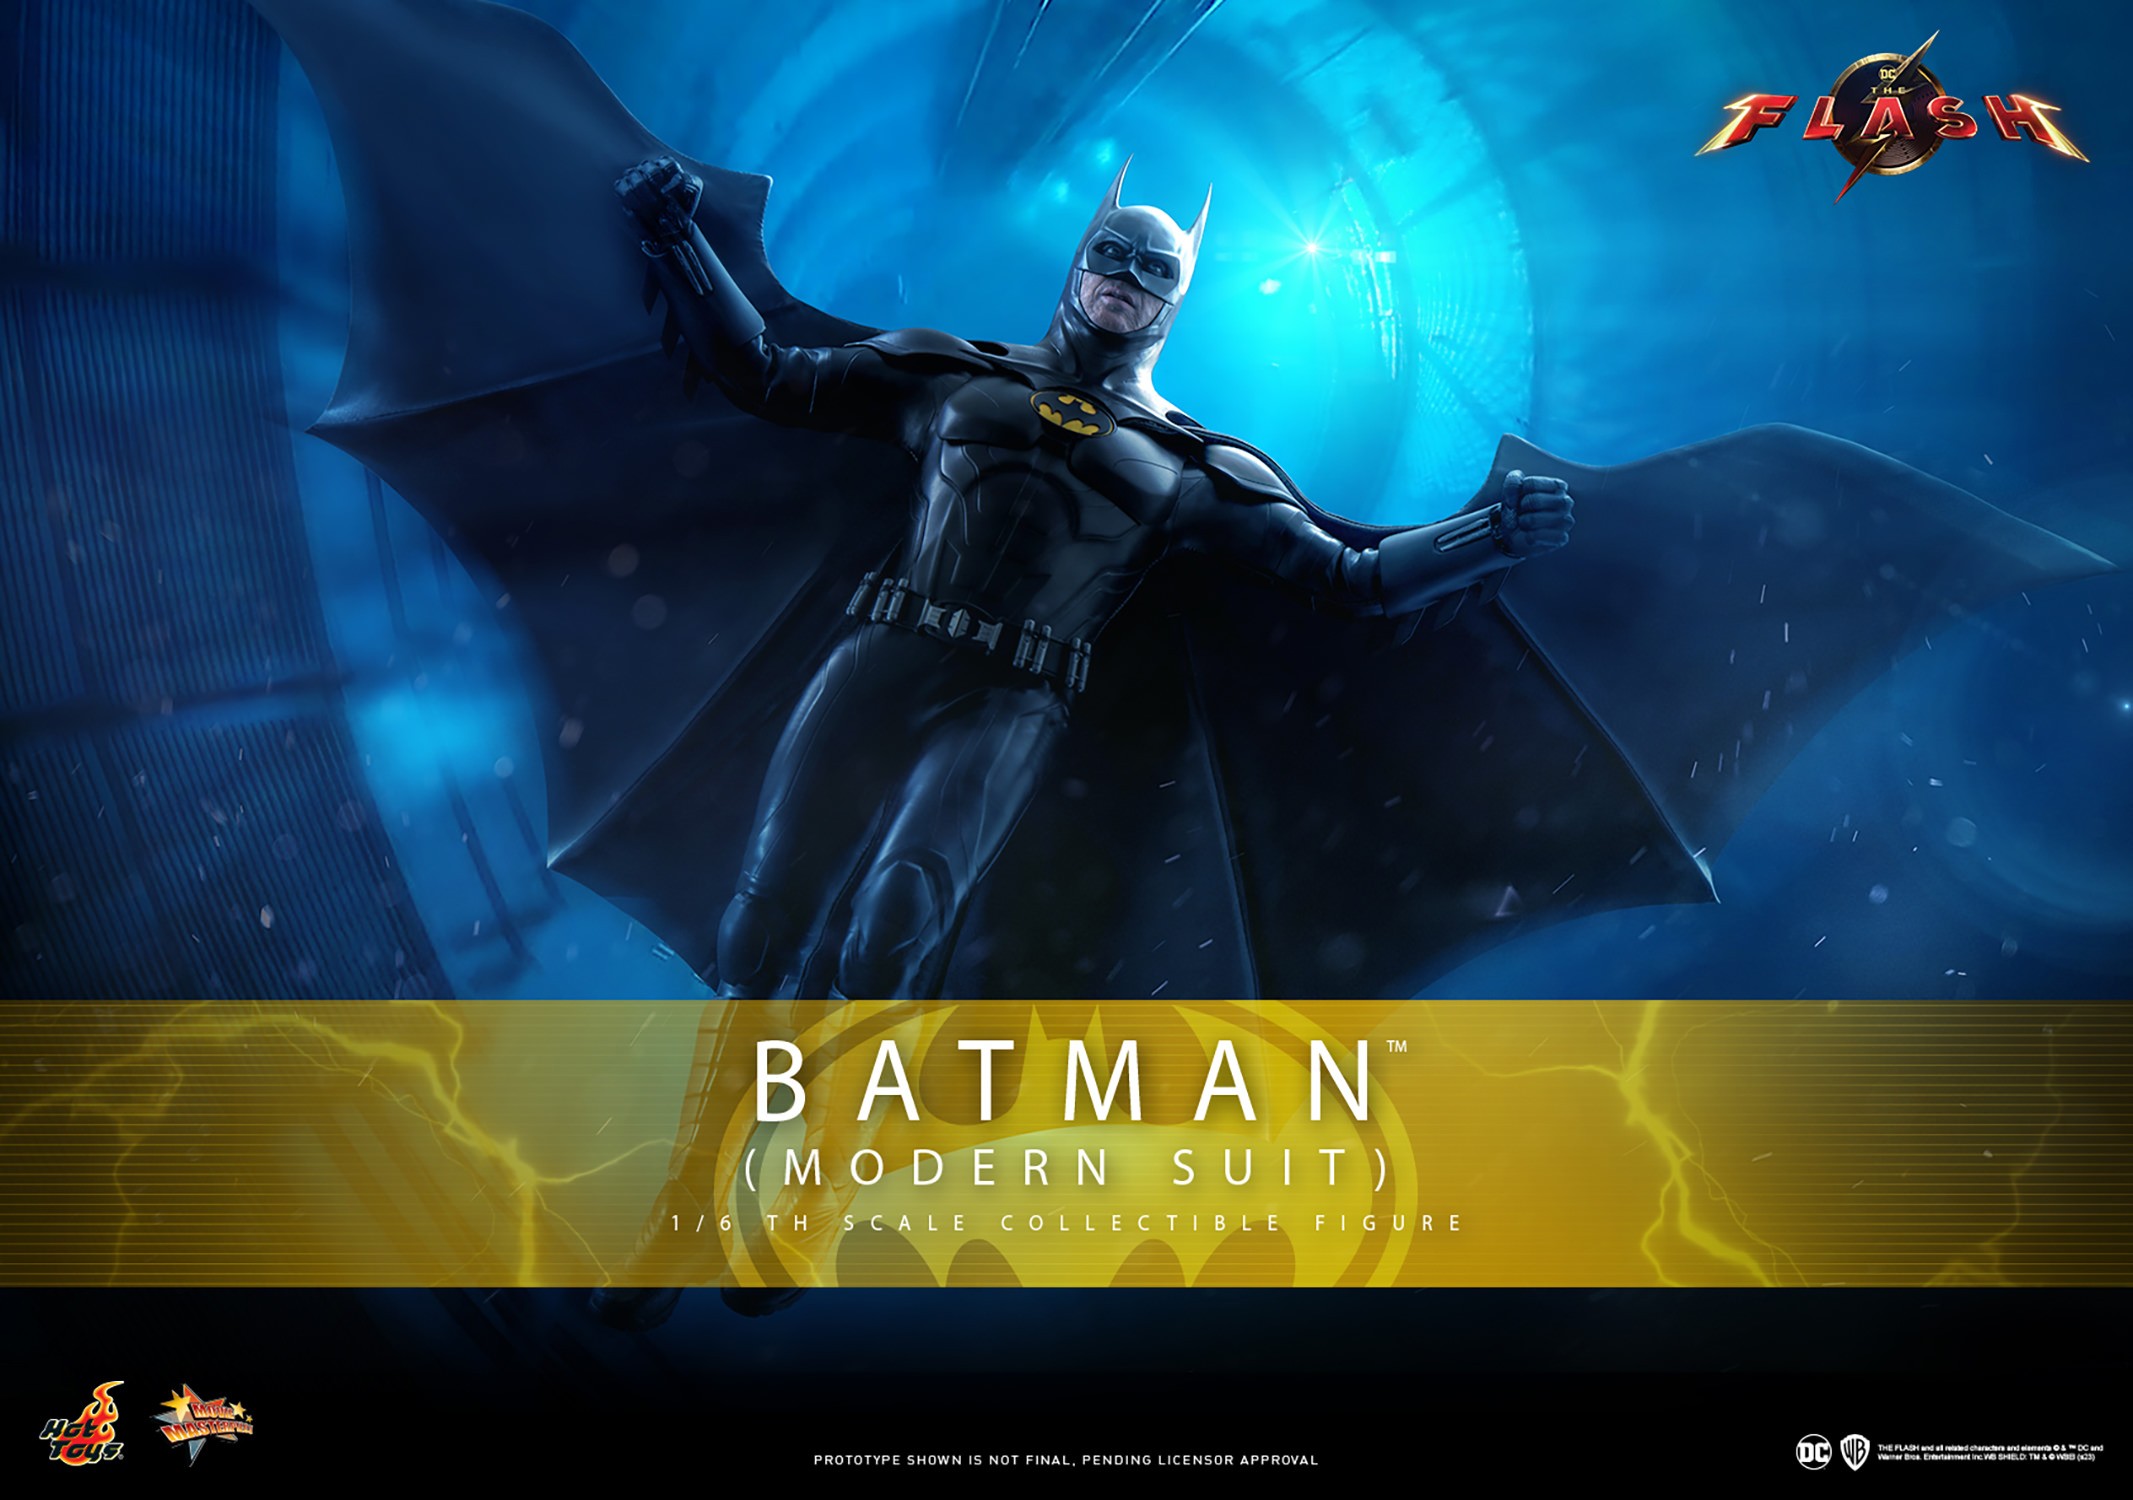 Batman (Modern Suit) (Prototype Shown) View 1